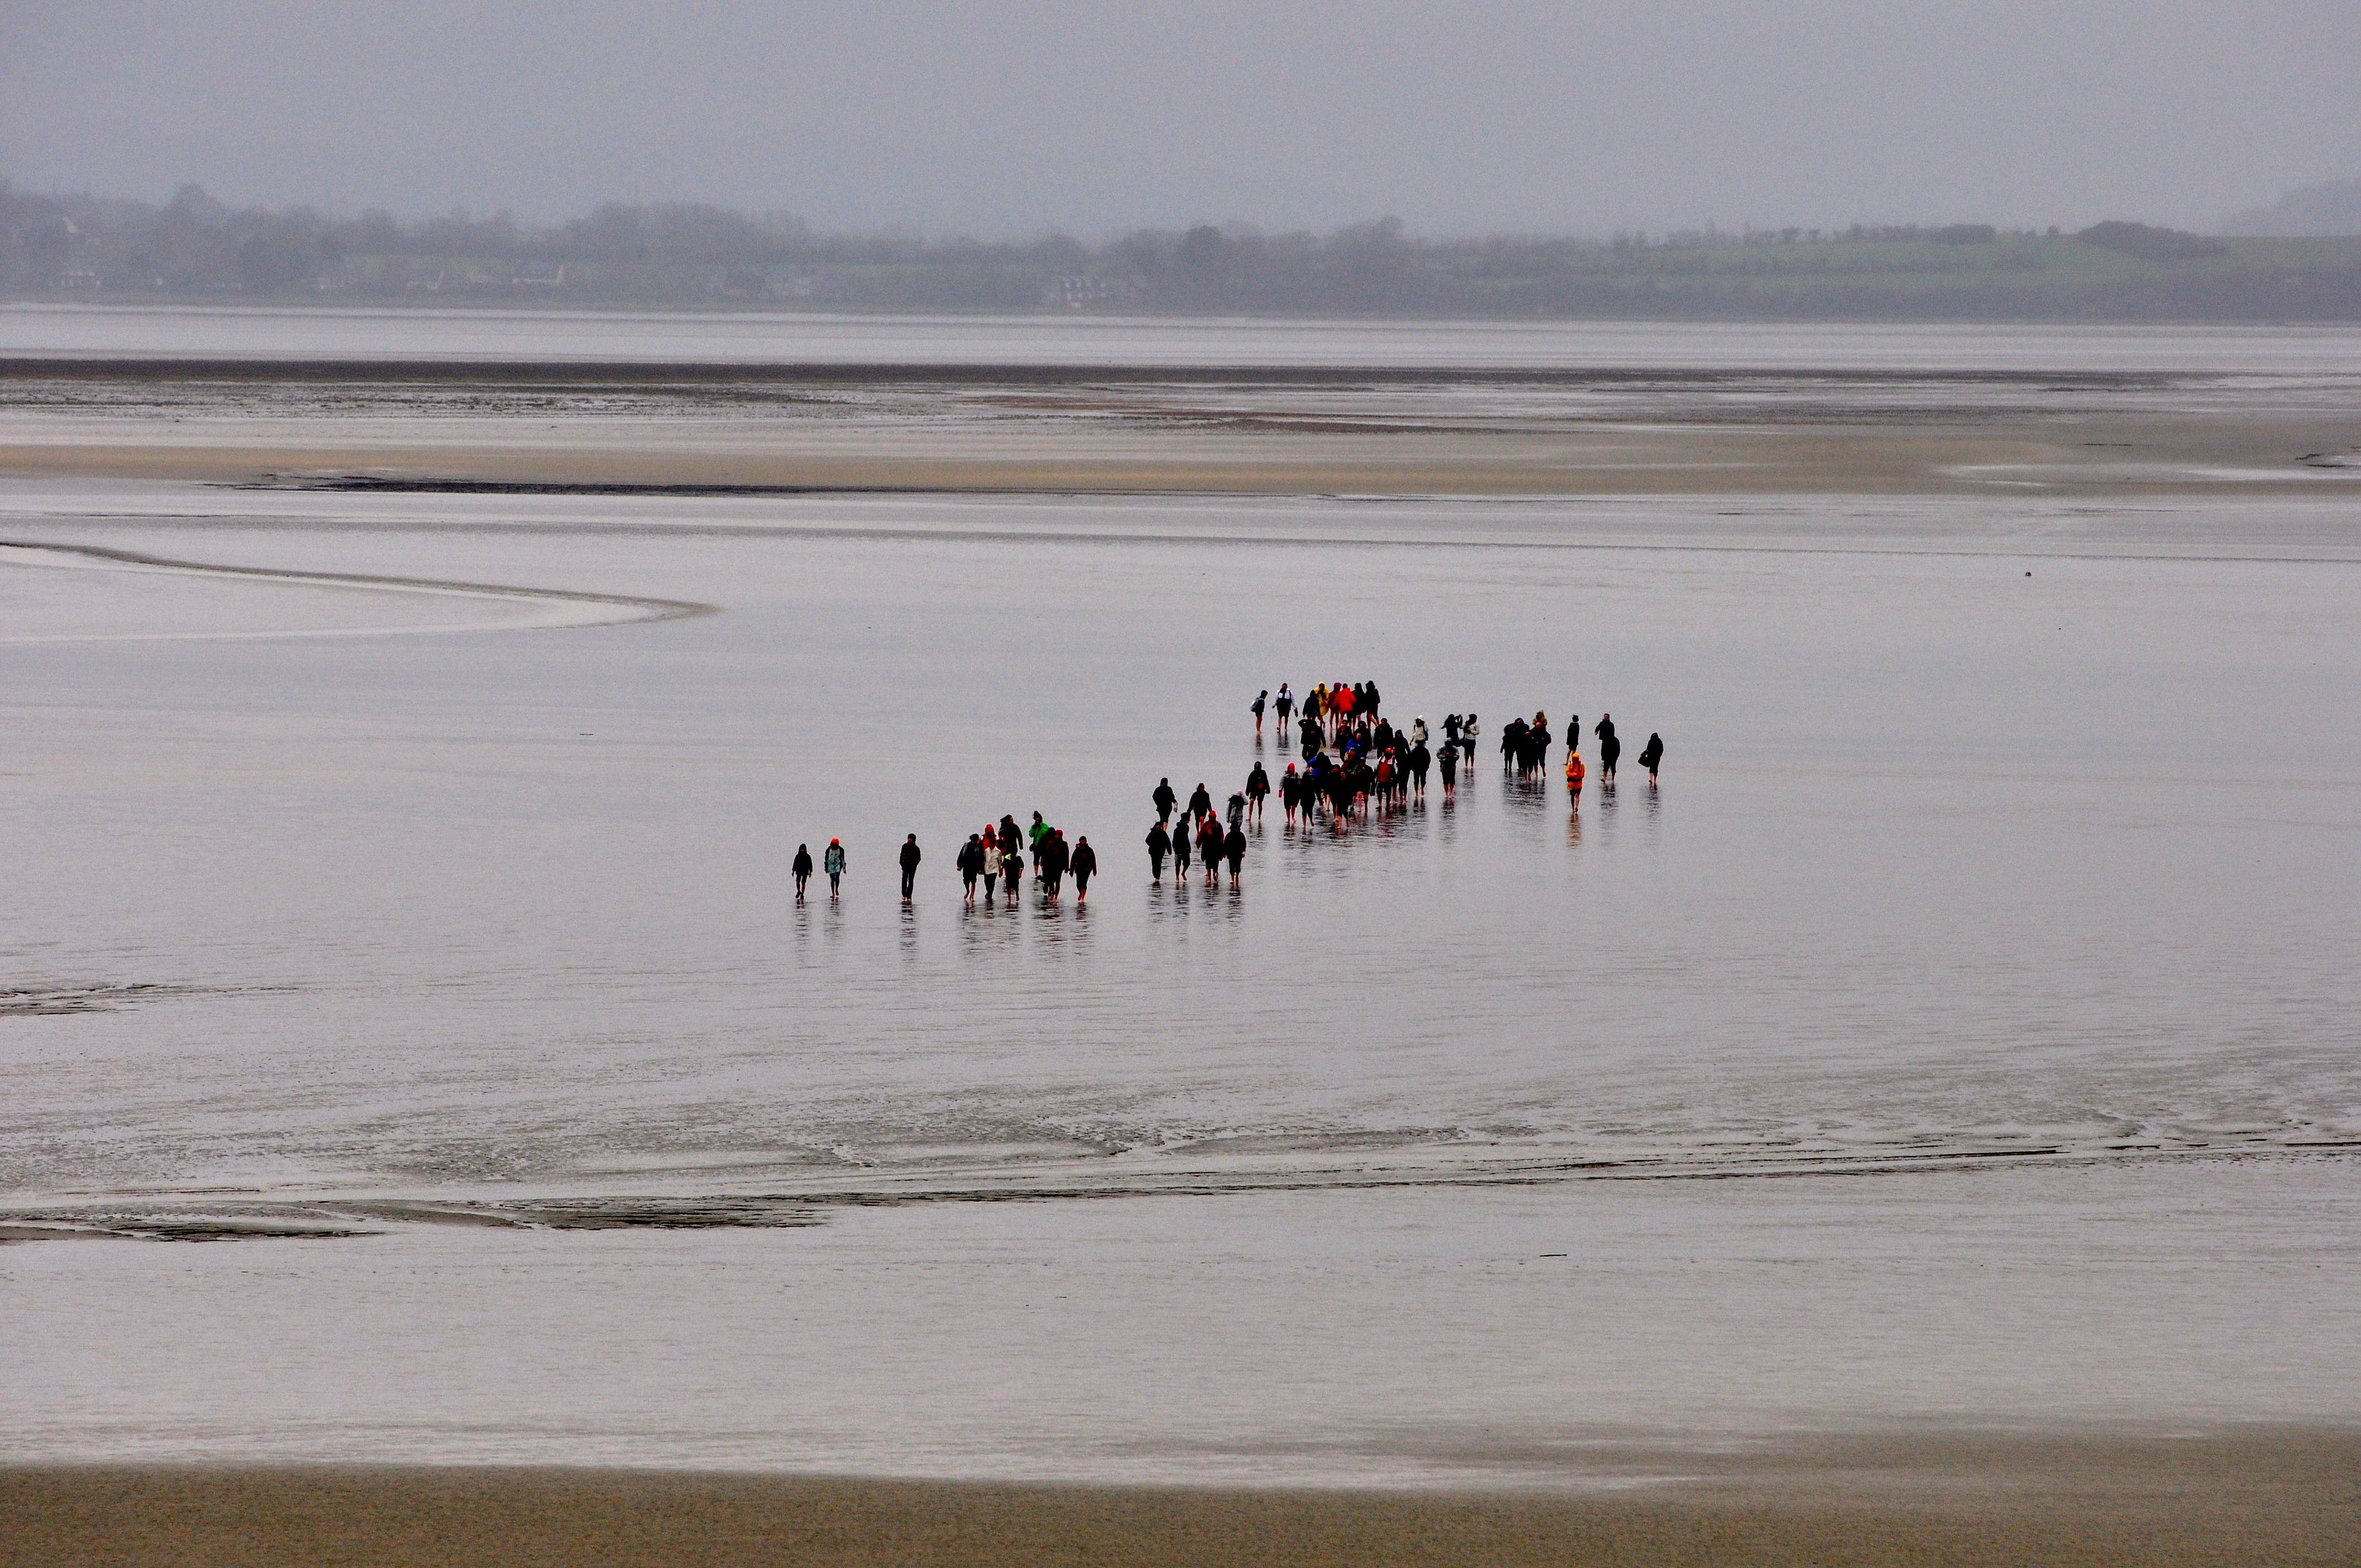 Os turistas fazem a travessia dos peregrinos no frio intenso da primavera da Normandia.